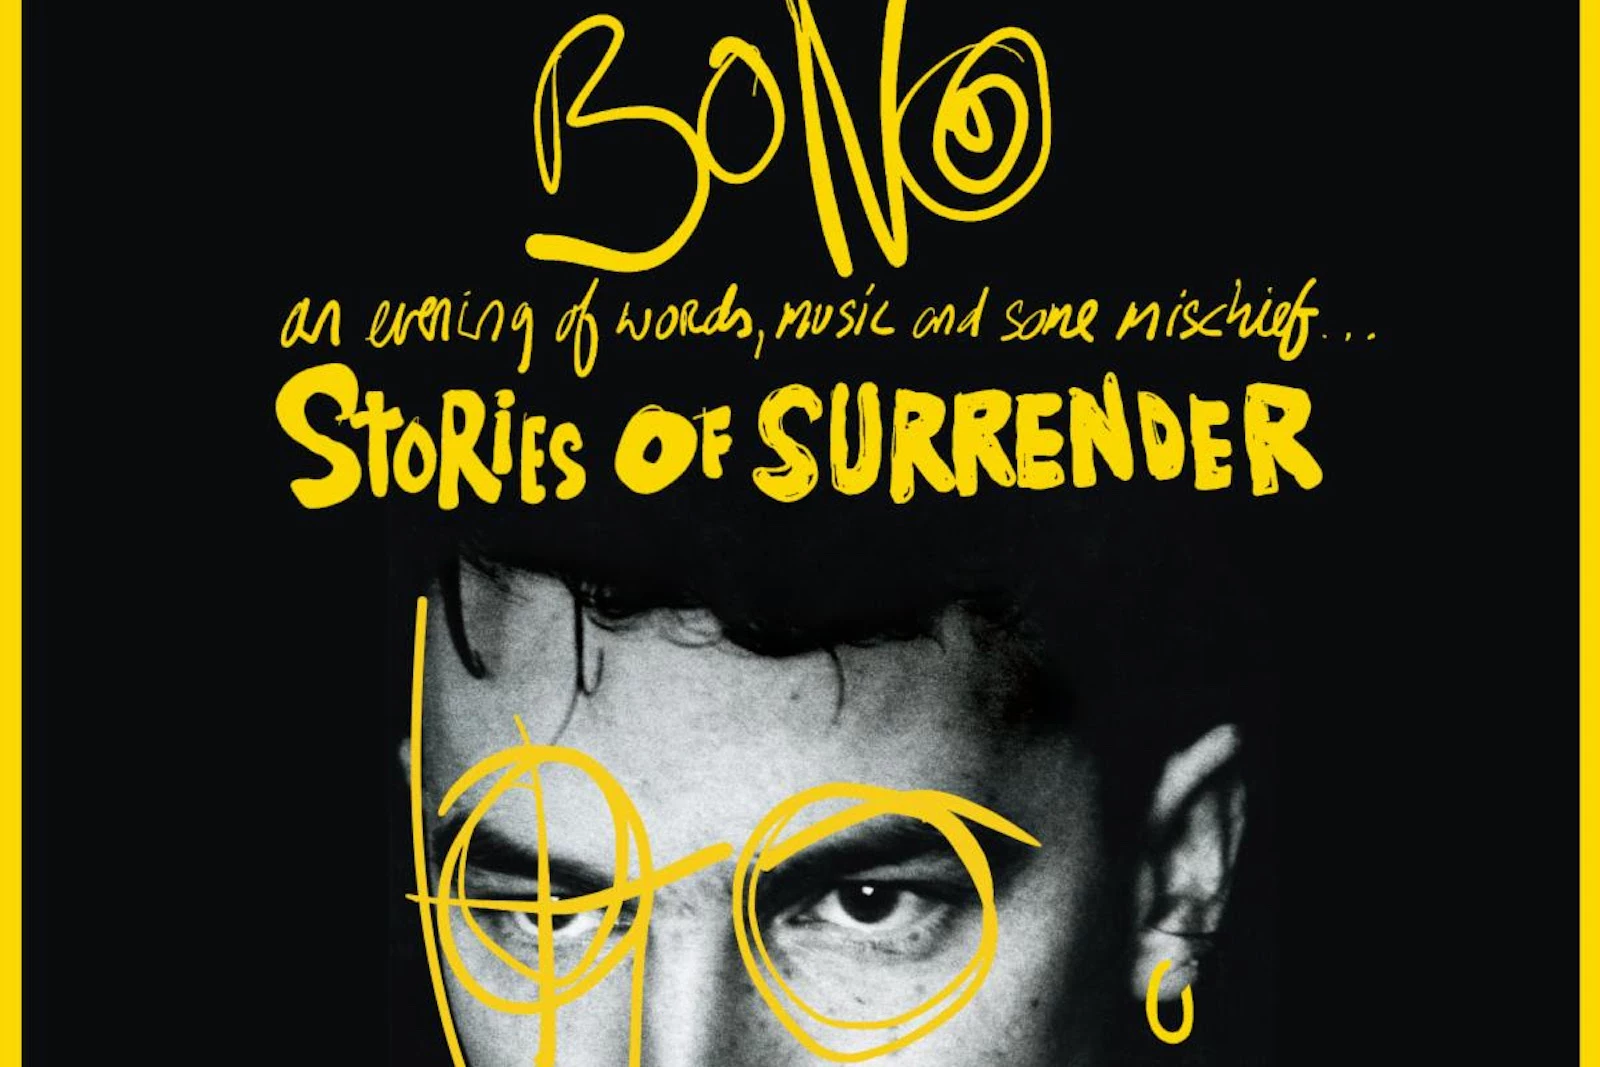 Bono Announces ‘Stories of Surrender’ Book Tour